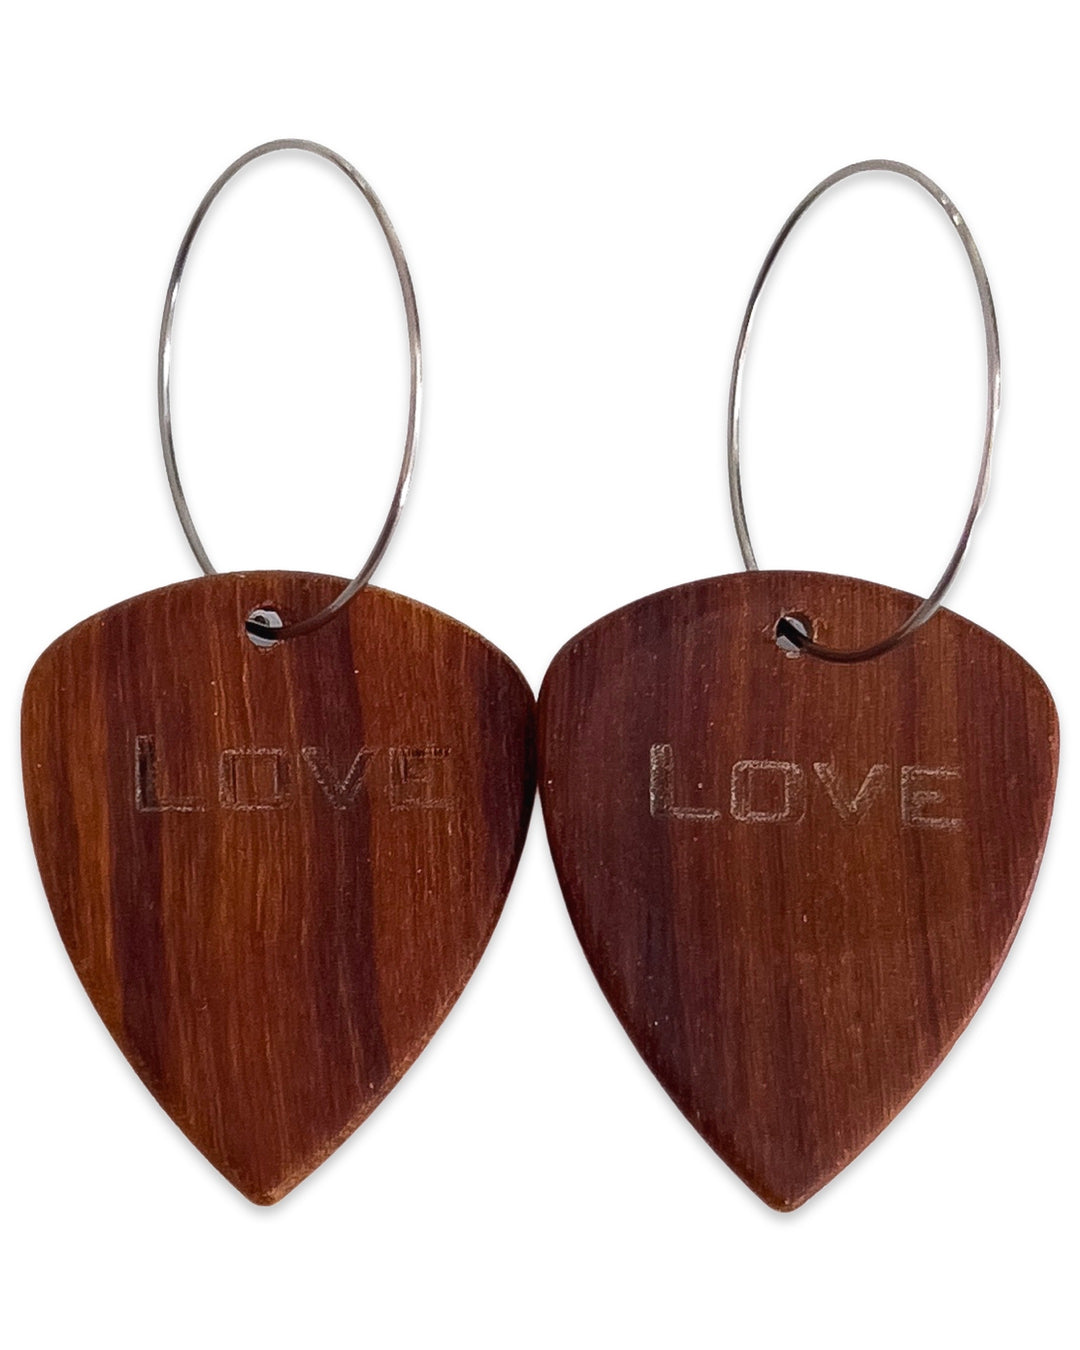 Groupie Love Red Sandalwood Wood Single Guitar Pick Earrings